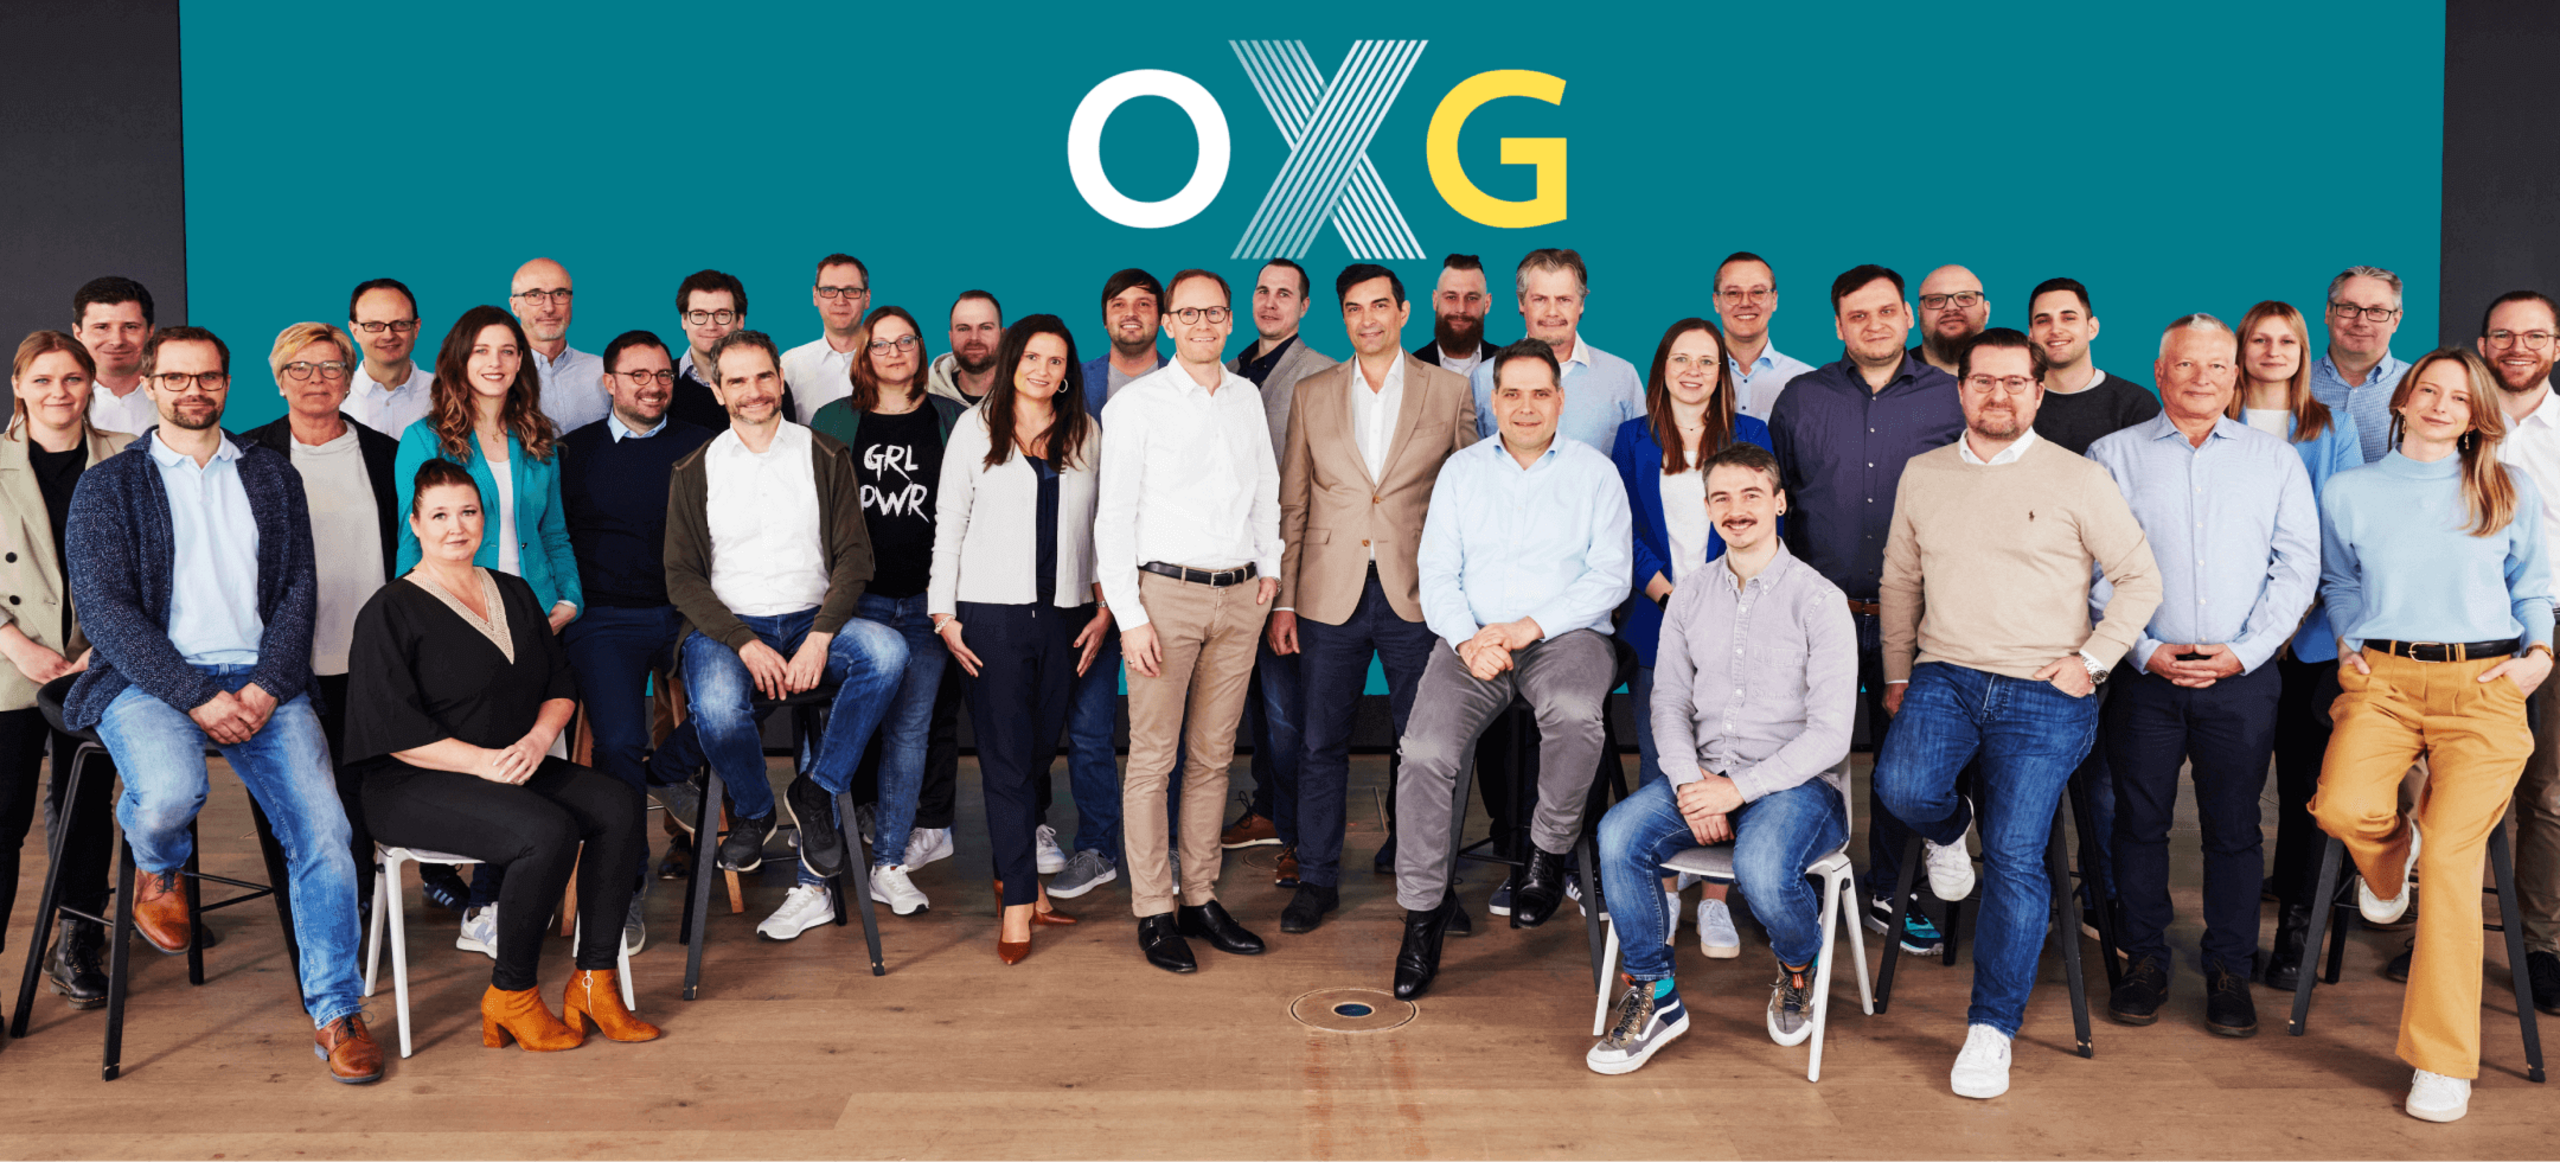 OXG Glasfaser Team Gruppenfoto Office